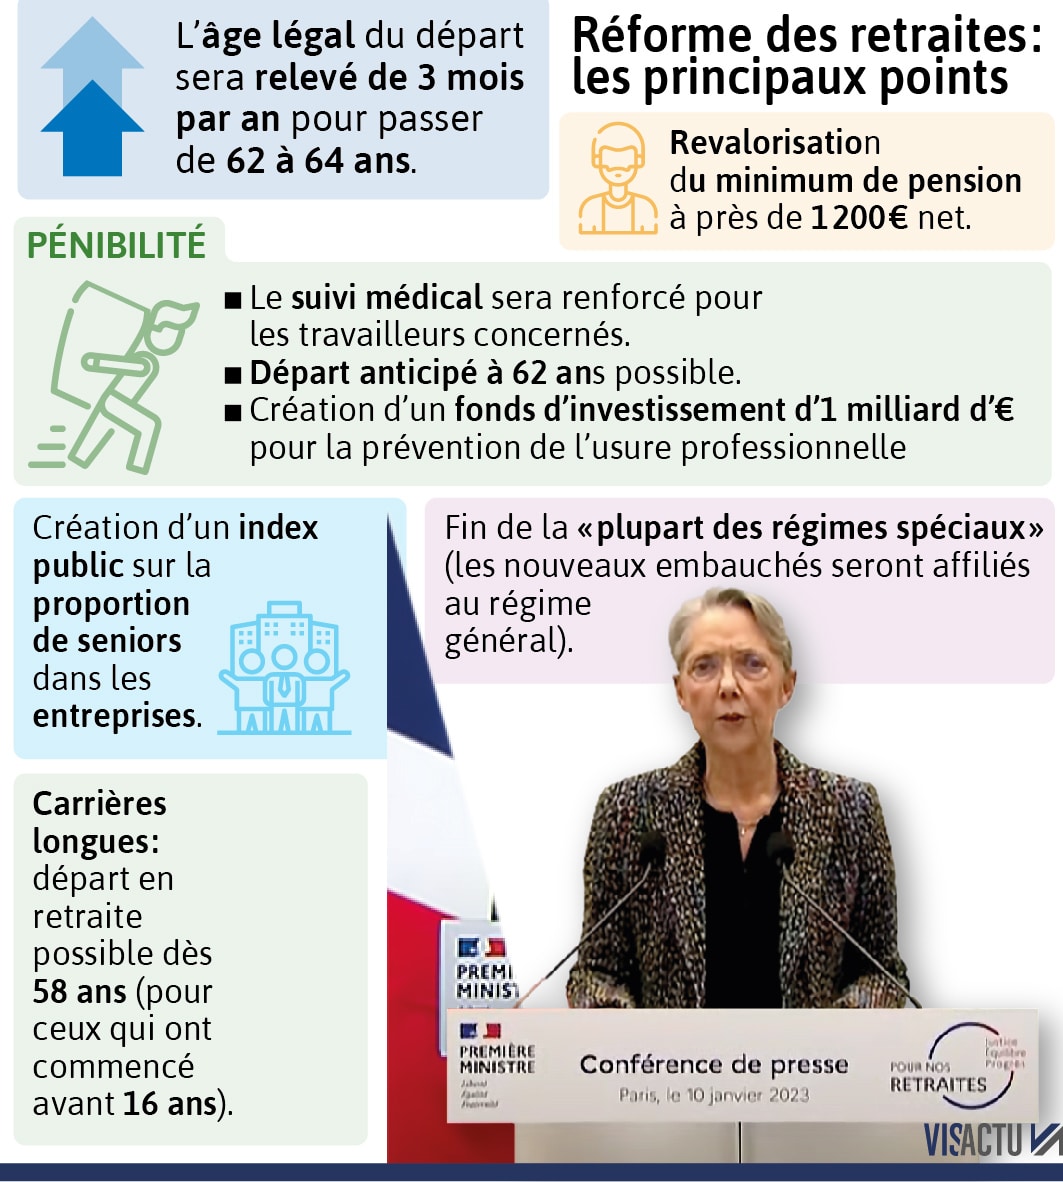 La nouvelle réforme des retraites en France